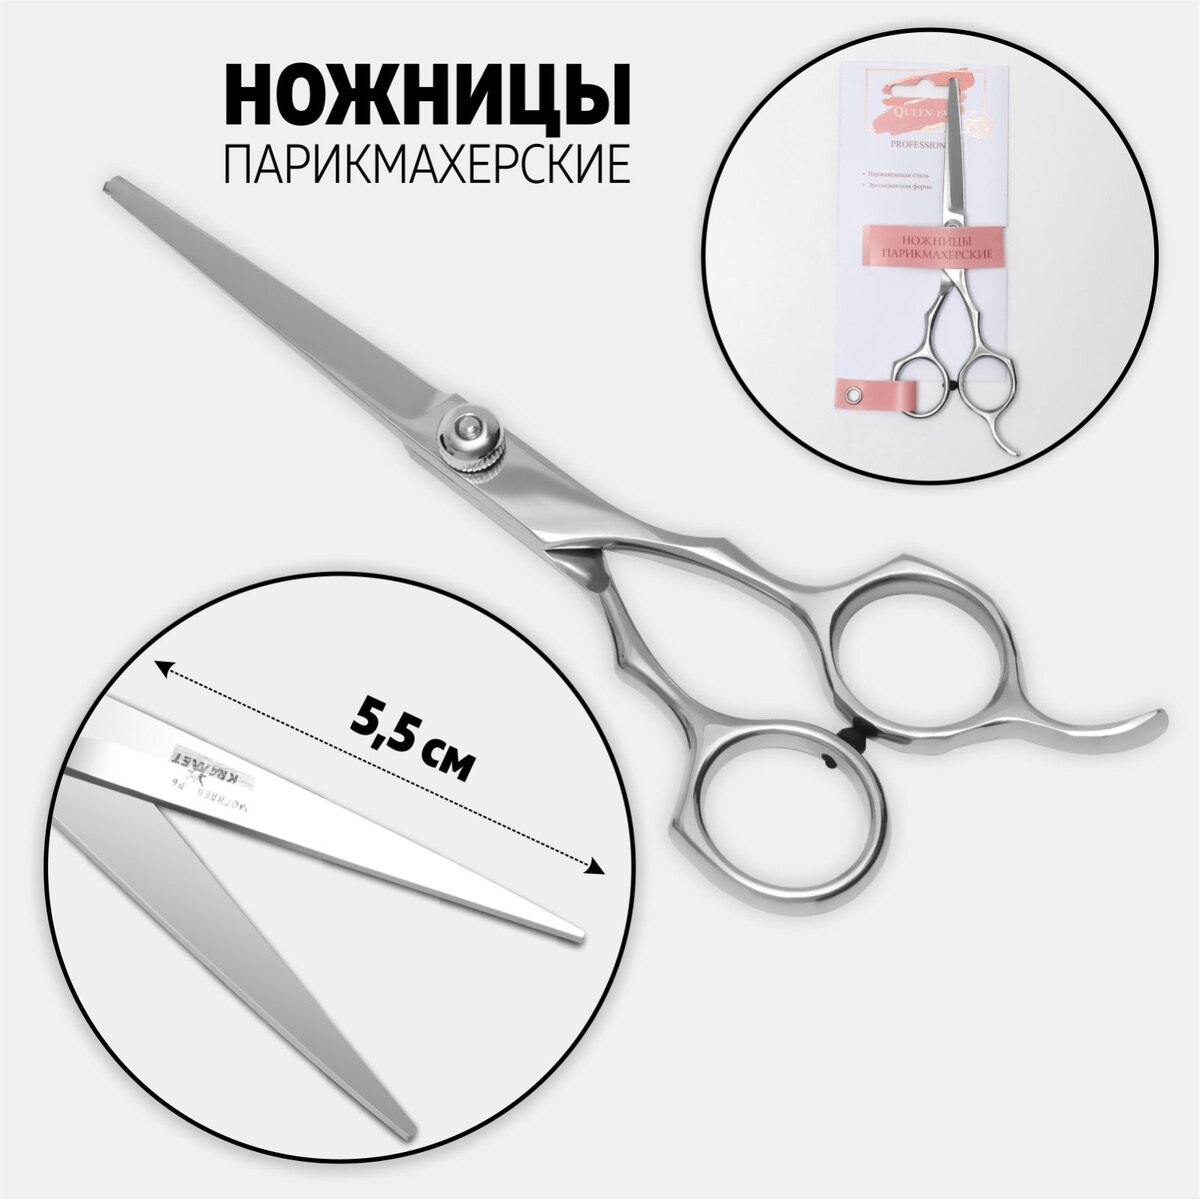 Ножницы парикмахерские с упором, лезвие — 5,5 см, цвет серебристый ножницы для птицы металлические gefu